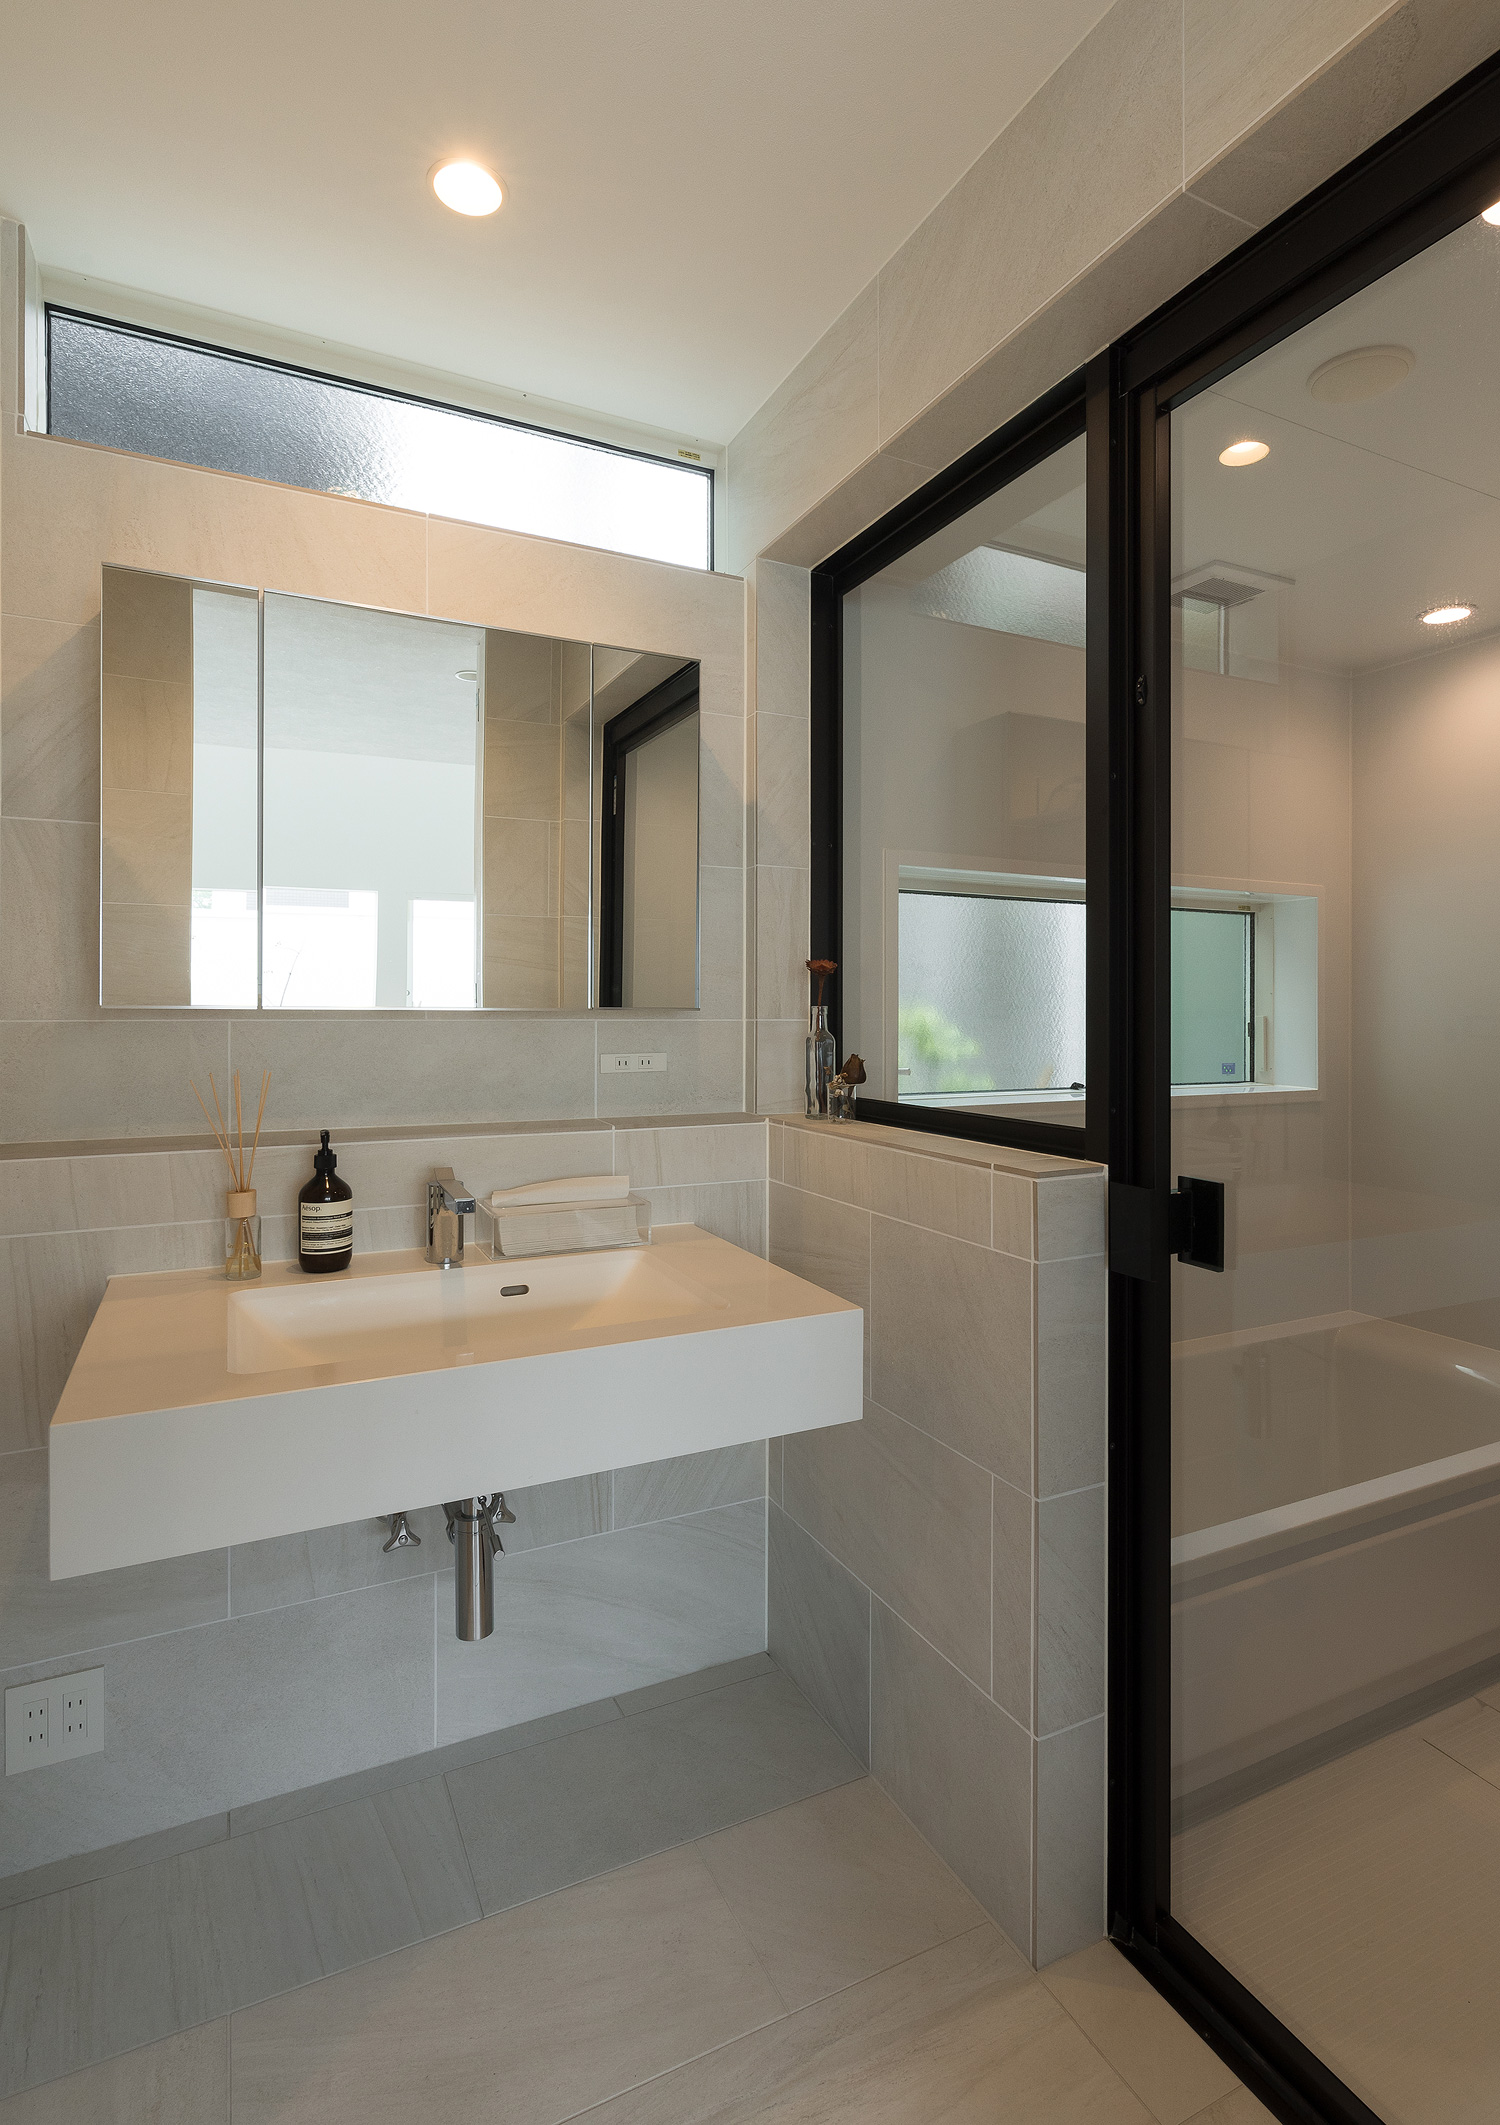 白いタイル壁の洗面所と浴室がガラス扉で仕切られている様子・デザイン住宅